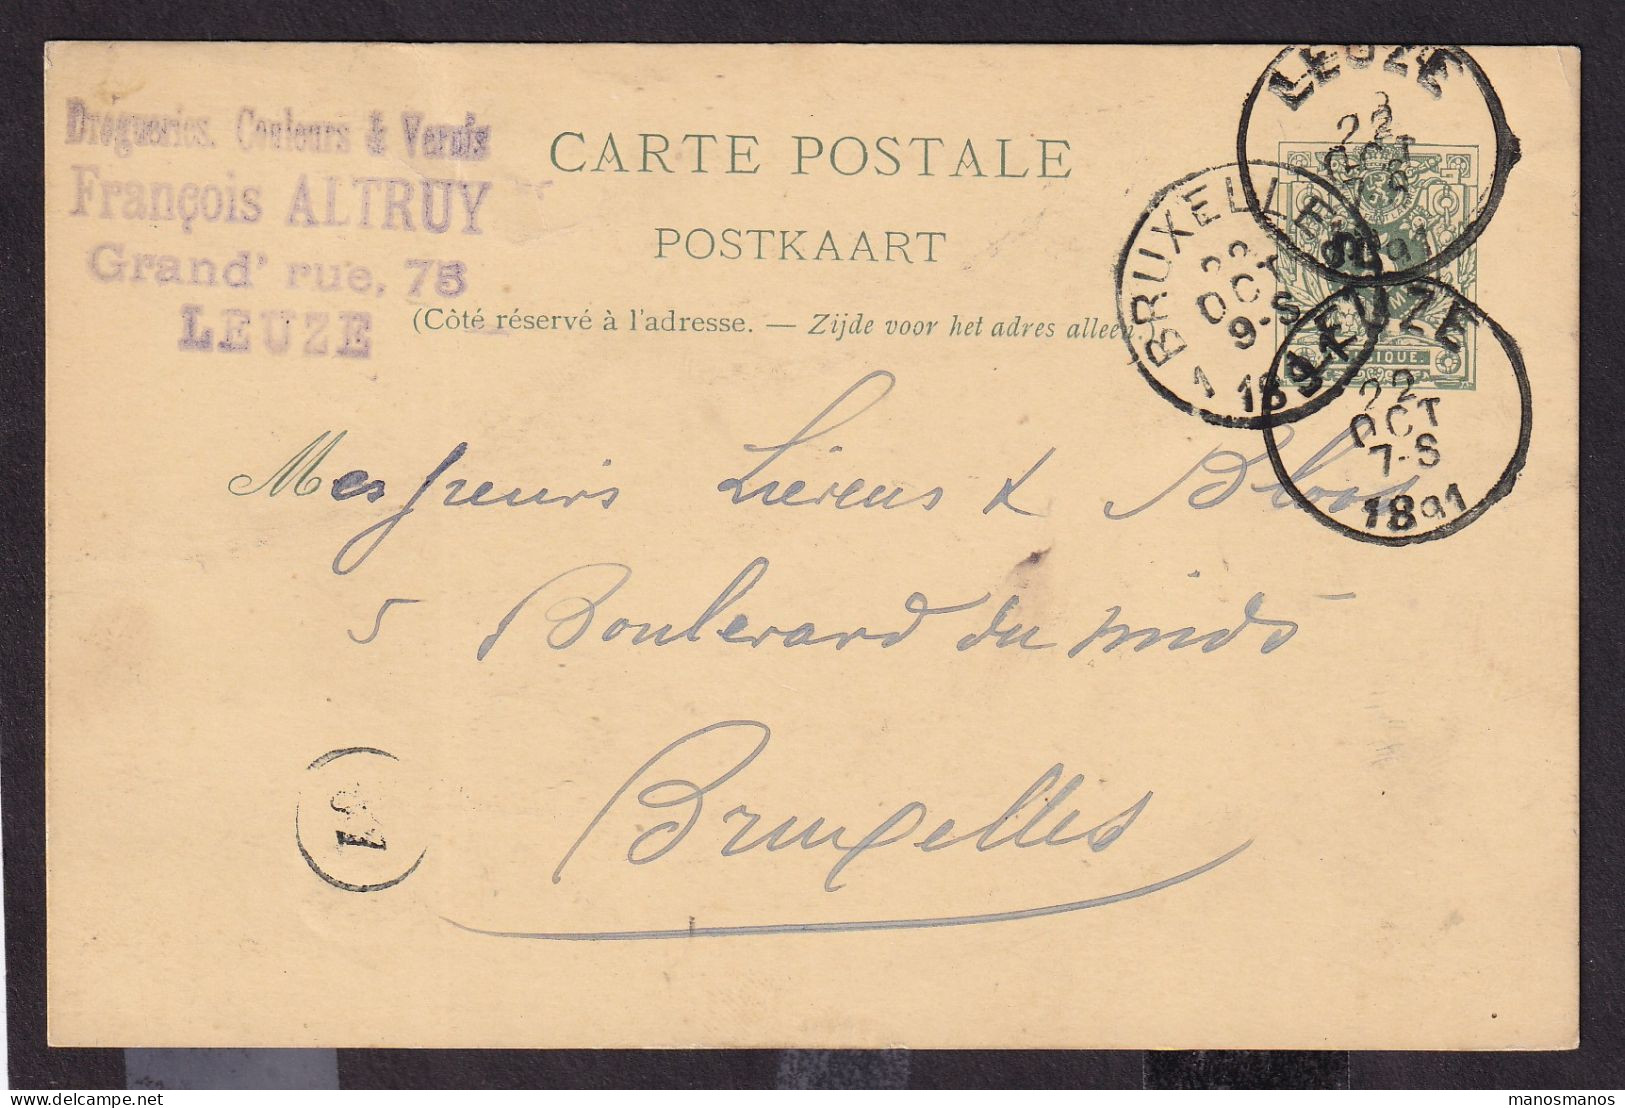 DDFF 539 - Entier Lion Couché LEUZE 1891 - Cachet Droguerie, Couleurs Et Vernis François Altruy à LEUZE - Cartes Postales 1871-1909